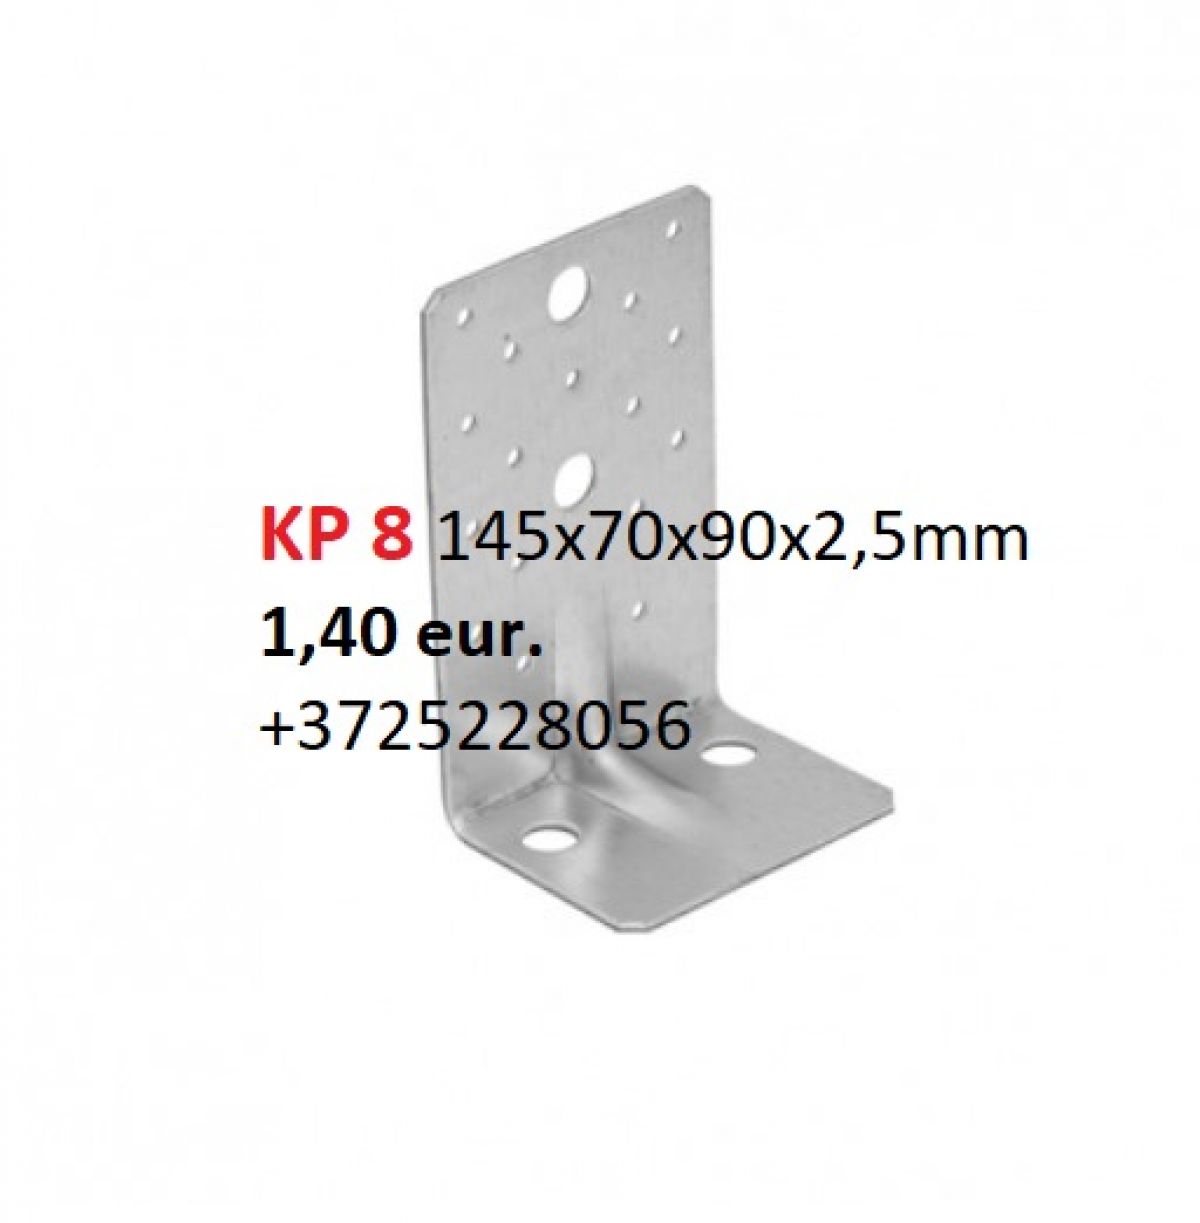 Уголки усиленные KP1 - 90x90x65x2,5 mm